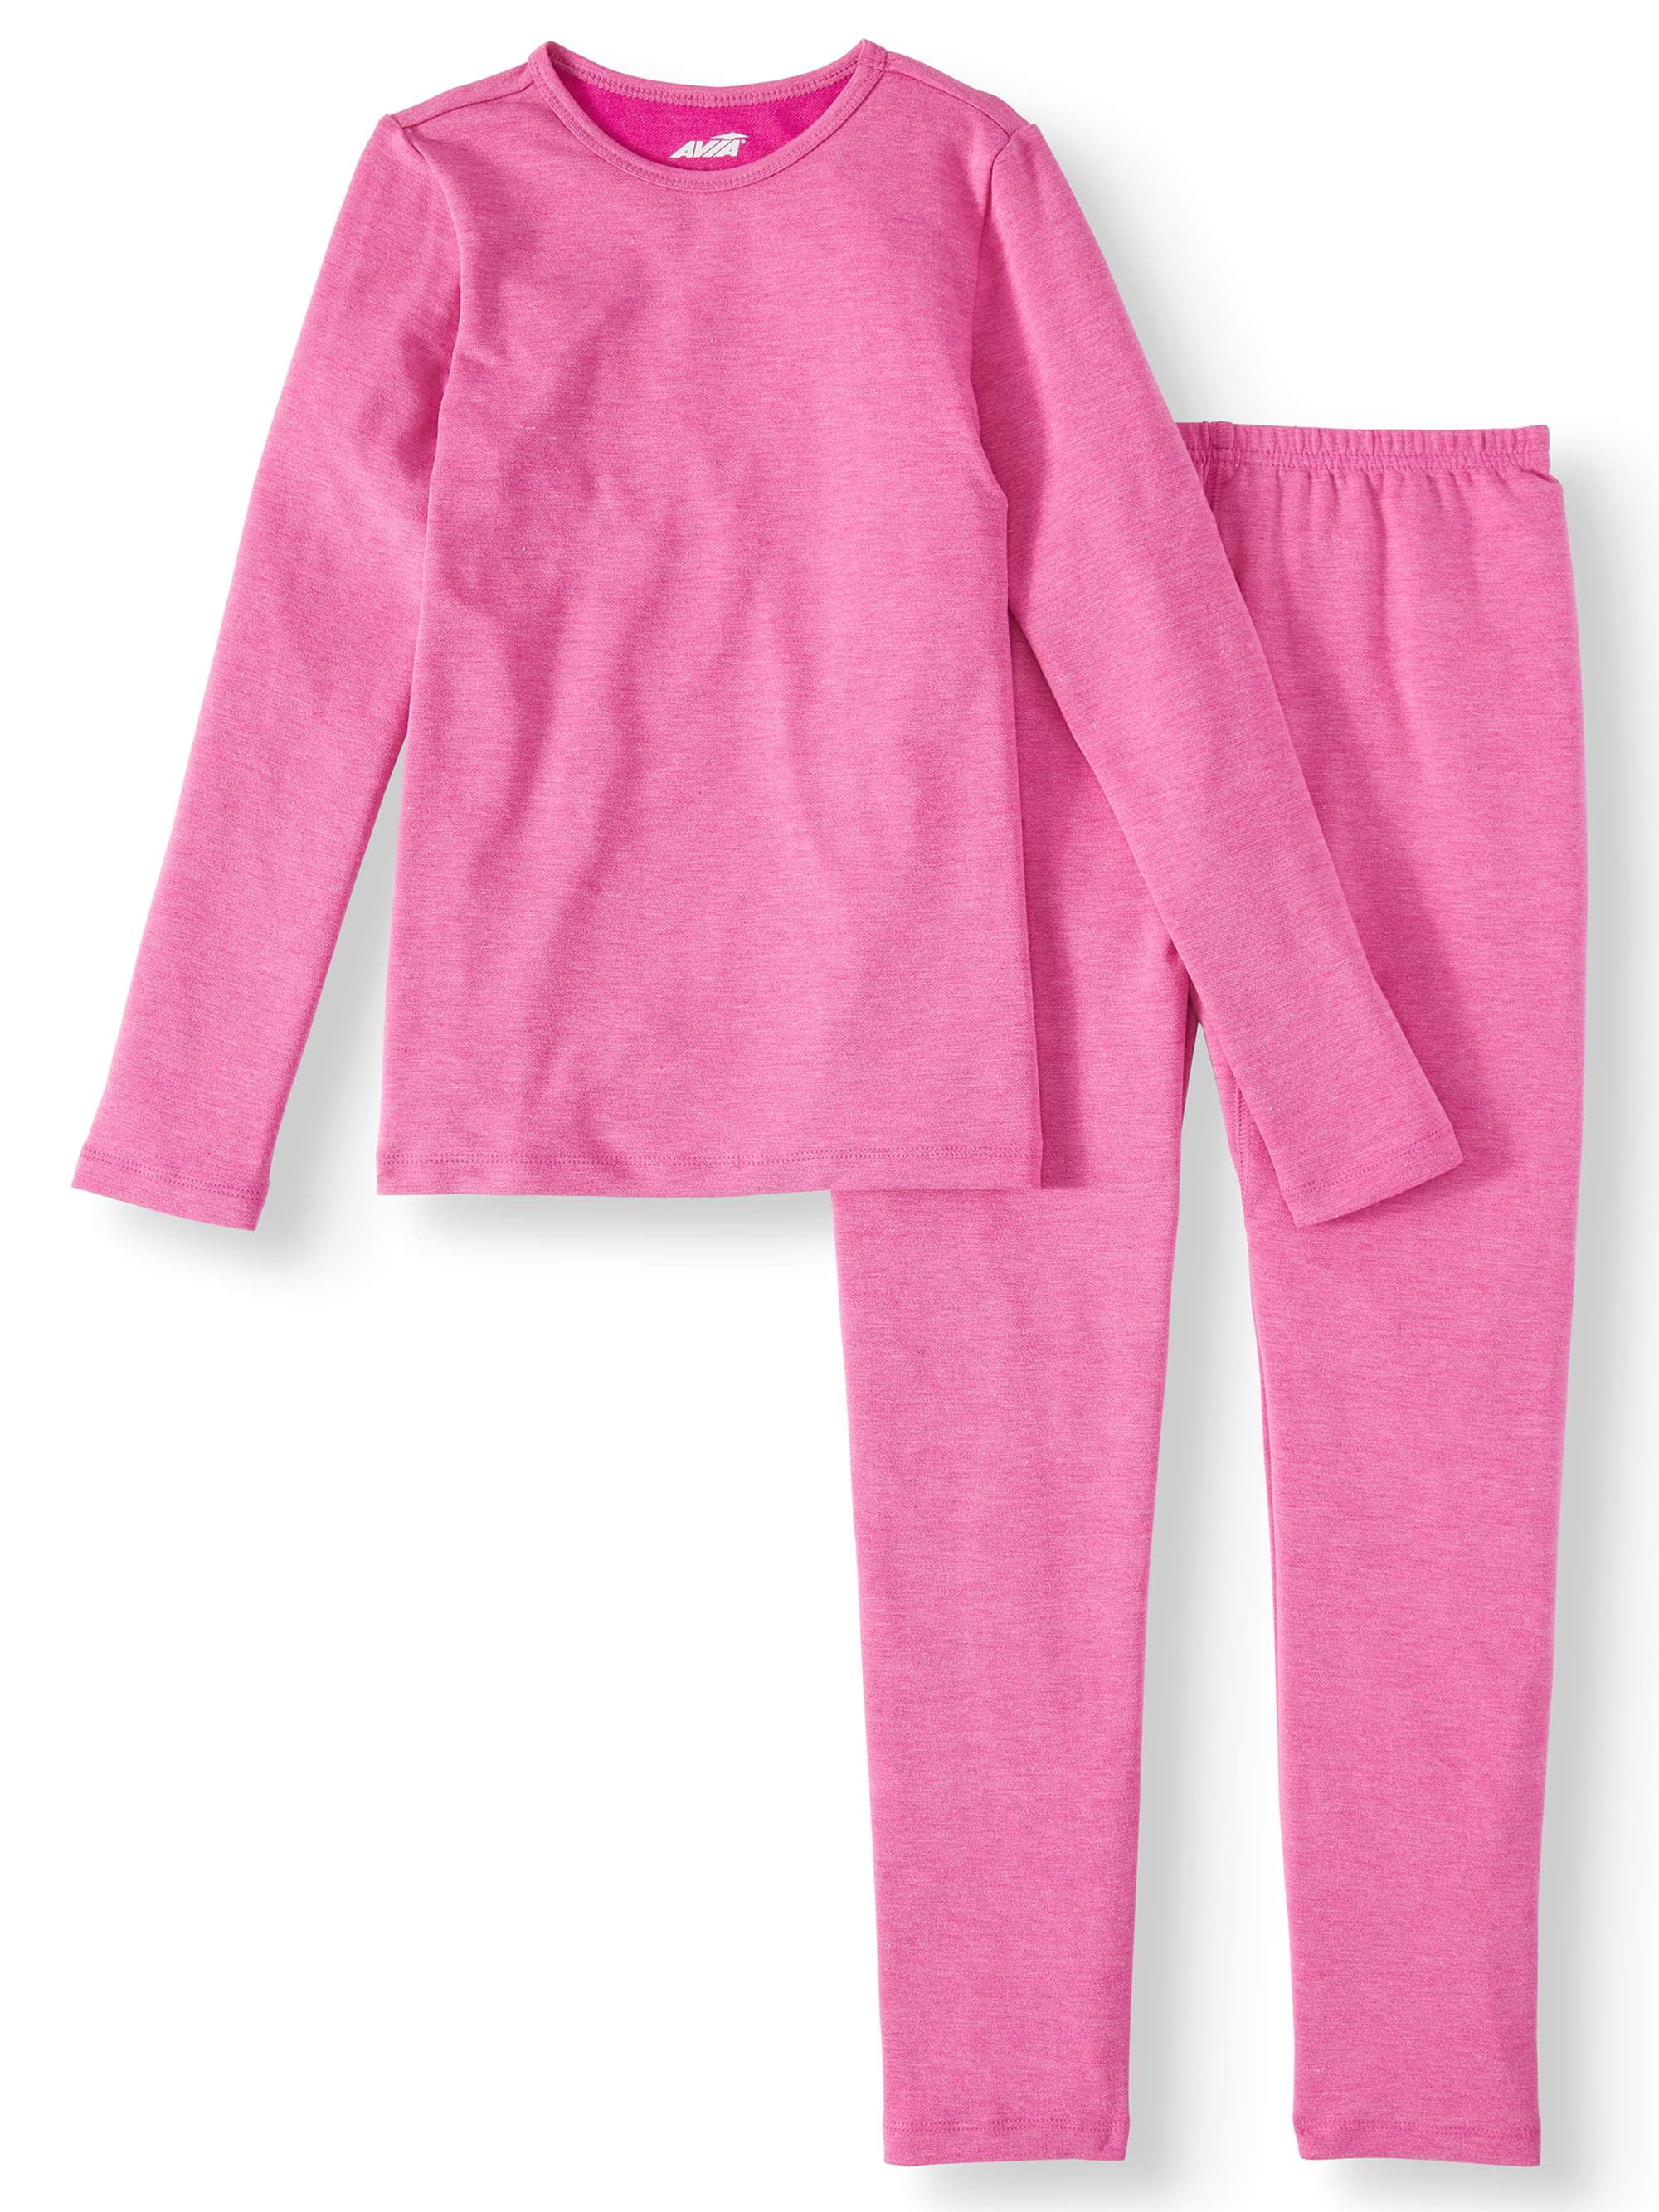 MYGBCPJS Little Boys Girls Cotton Pajamas Thermal Underwear Set Soft Warm Jammies